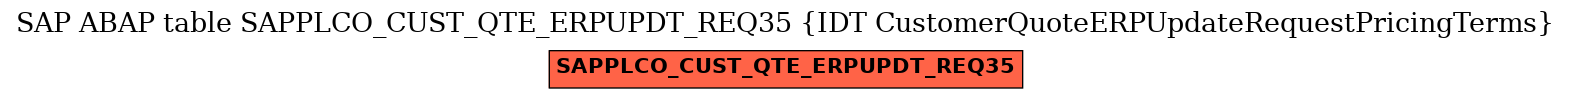 E-R Diagram for table SAPPLCO_CUST_QTE_ERPUPDT_REQ35 (IDT CustomerQuoteERPUpdateRequestPricingTerms)